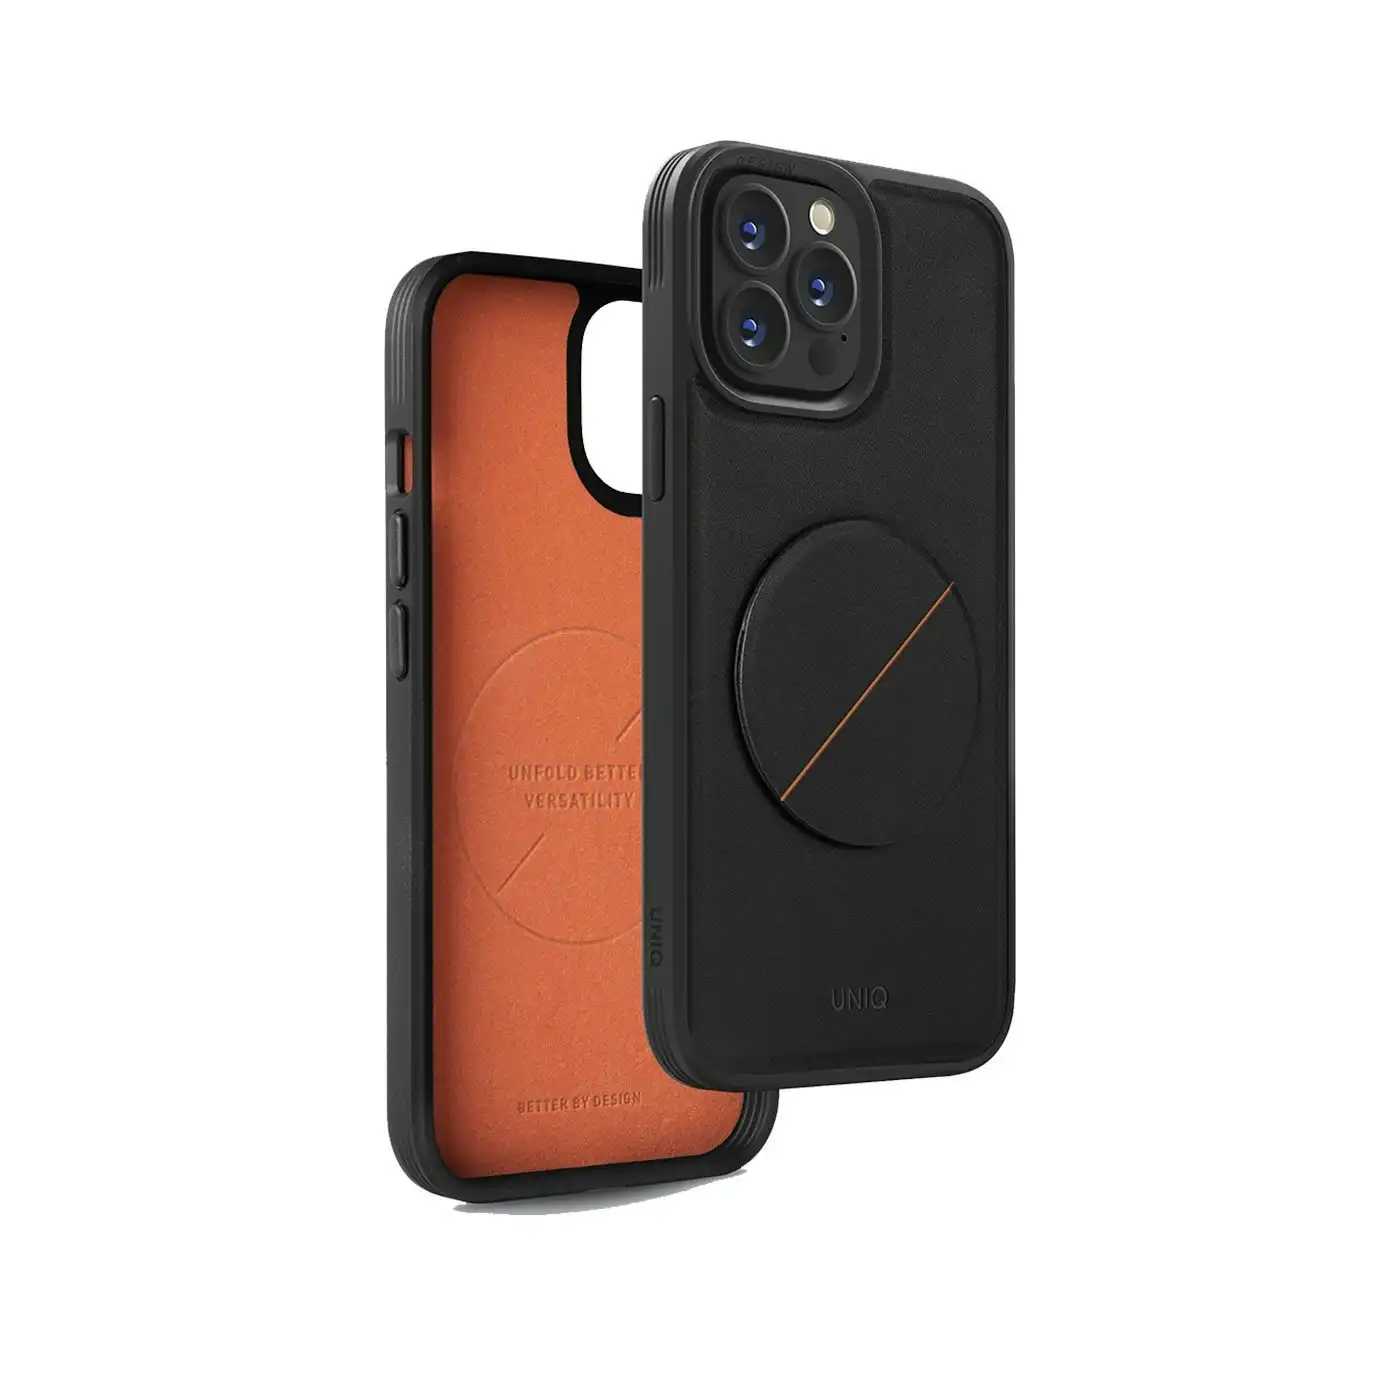 Uniq Novo Phone Case Protection Slim Cover w/ MagPop For iPhone 14 Pro Max Black